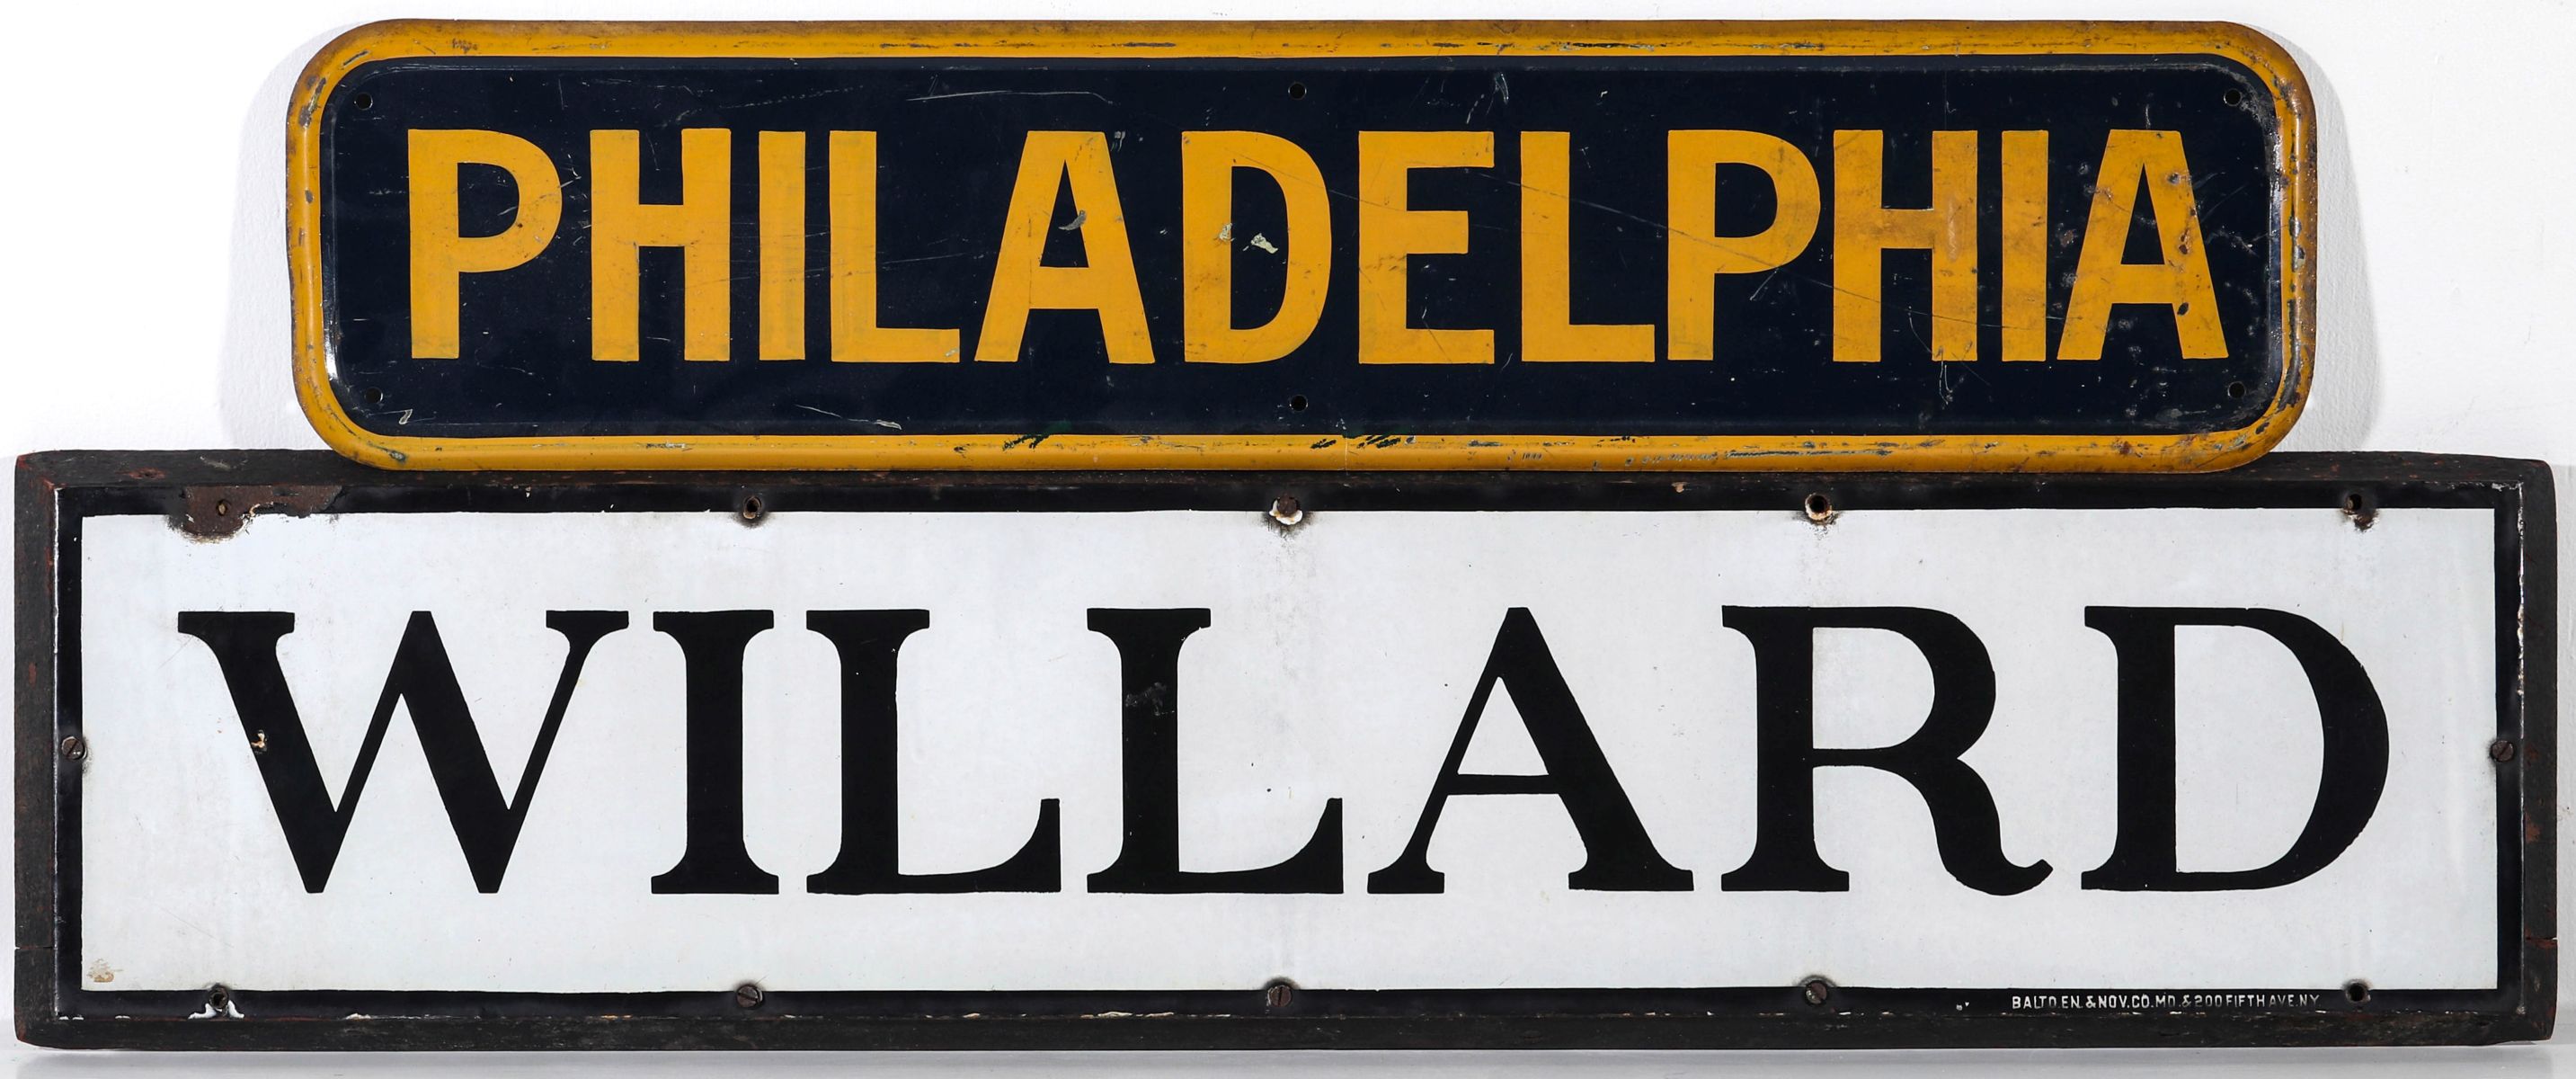 PORCELAIN SIGN FOR WILLARD, STEEL SIGN FOR PHILADELPHIA